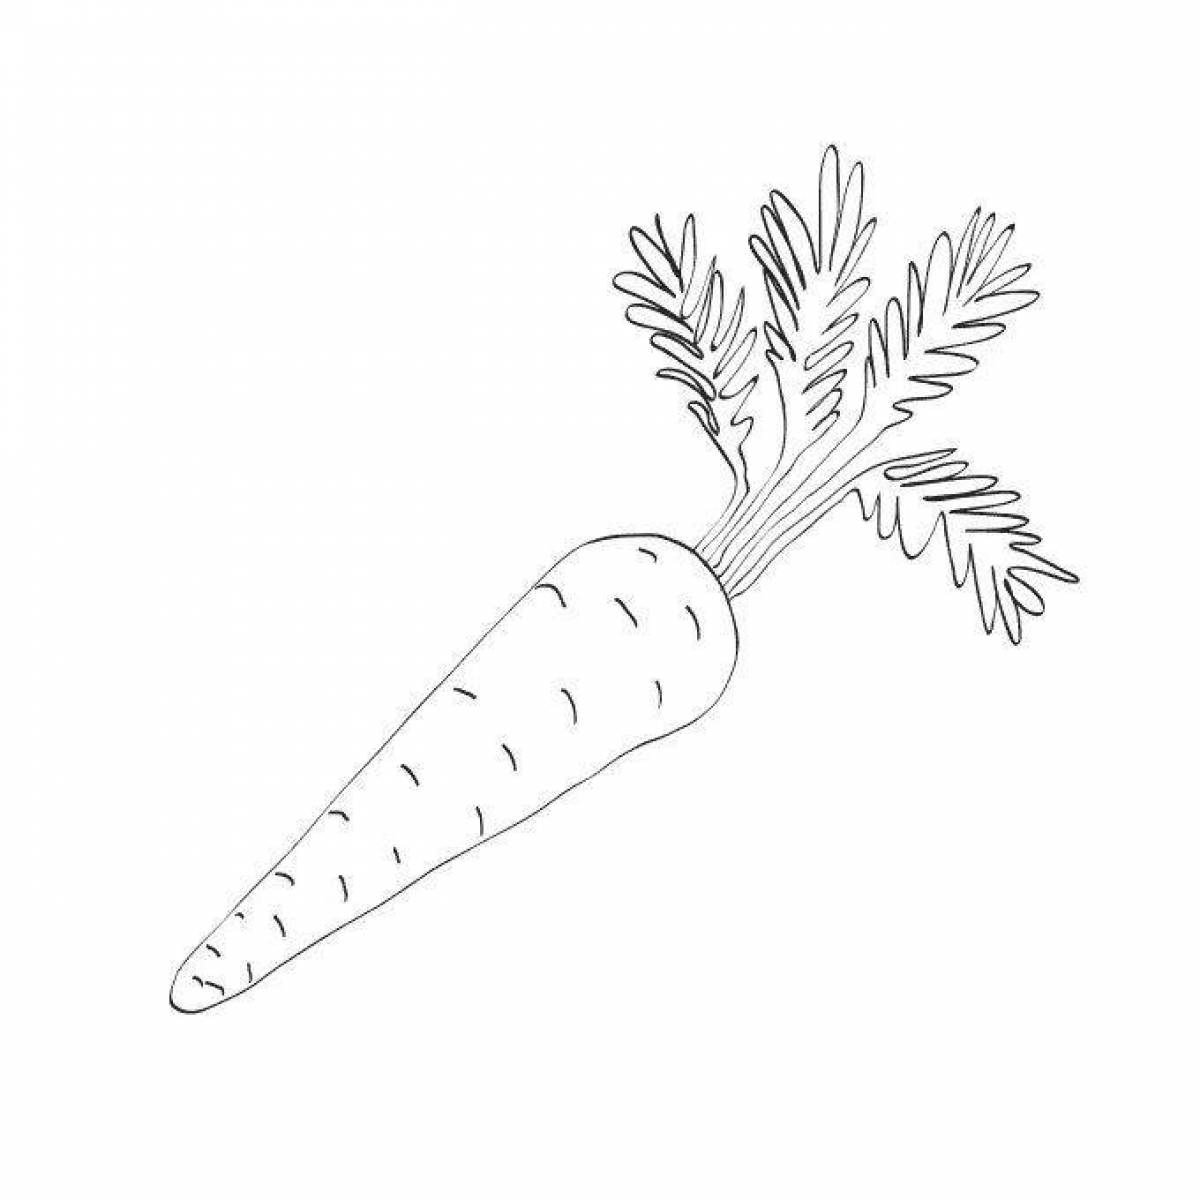 Bright carrot illustration